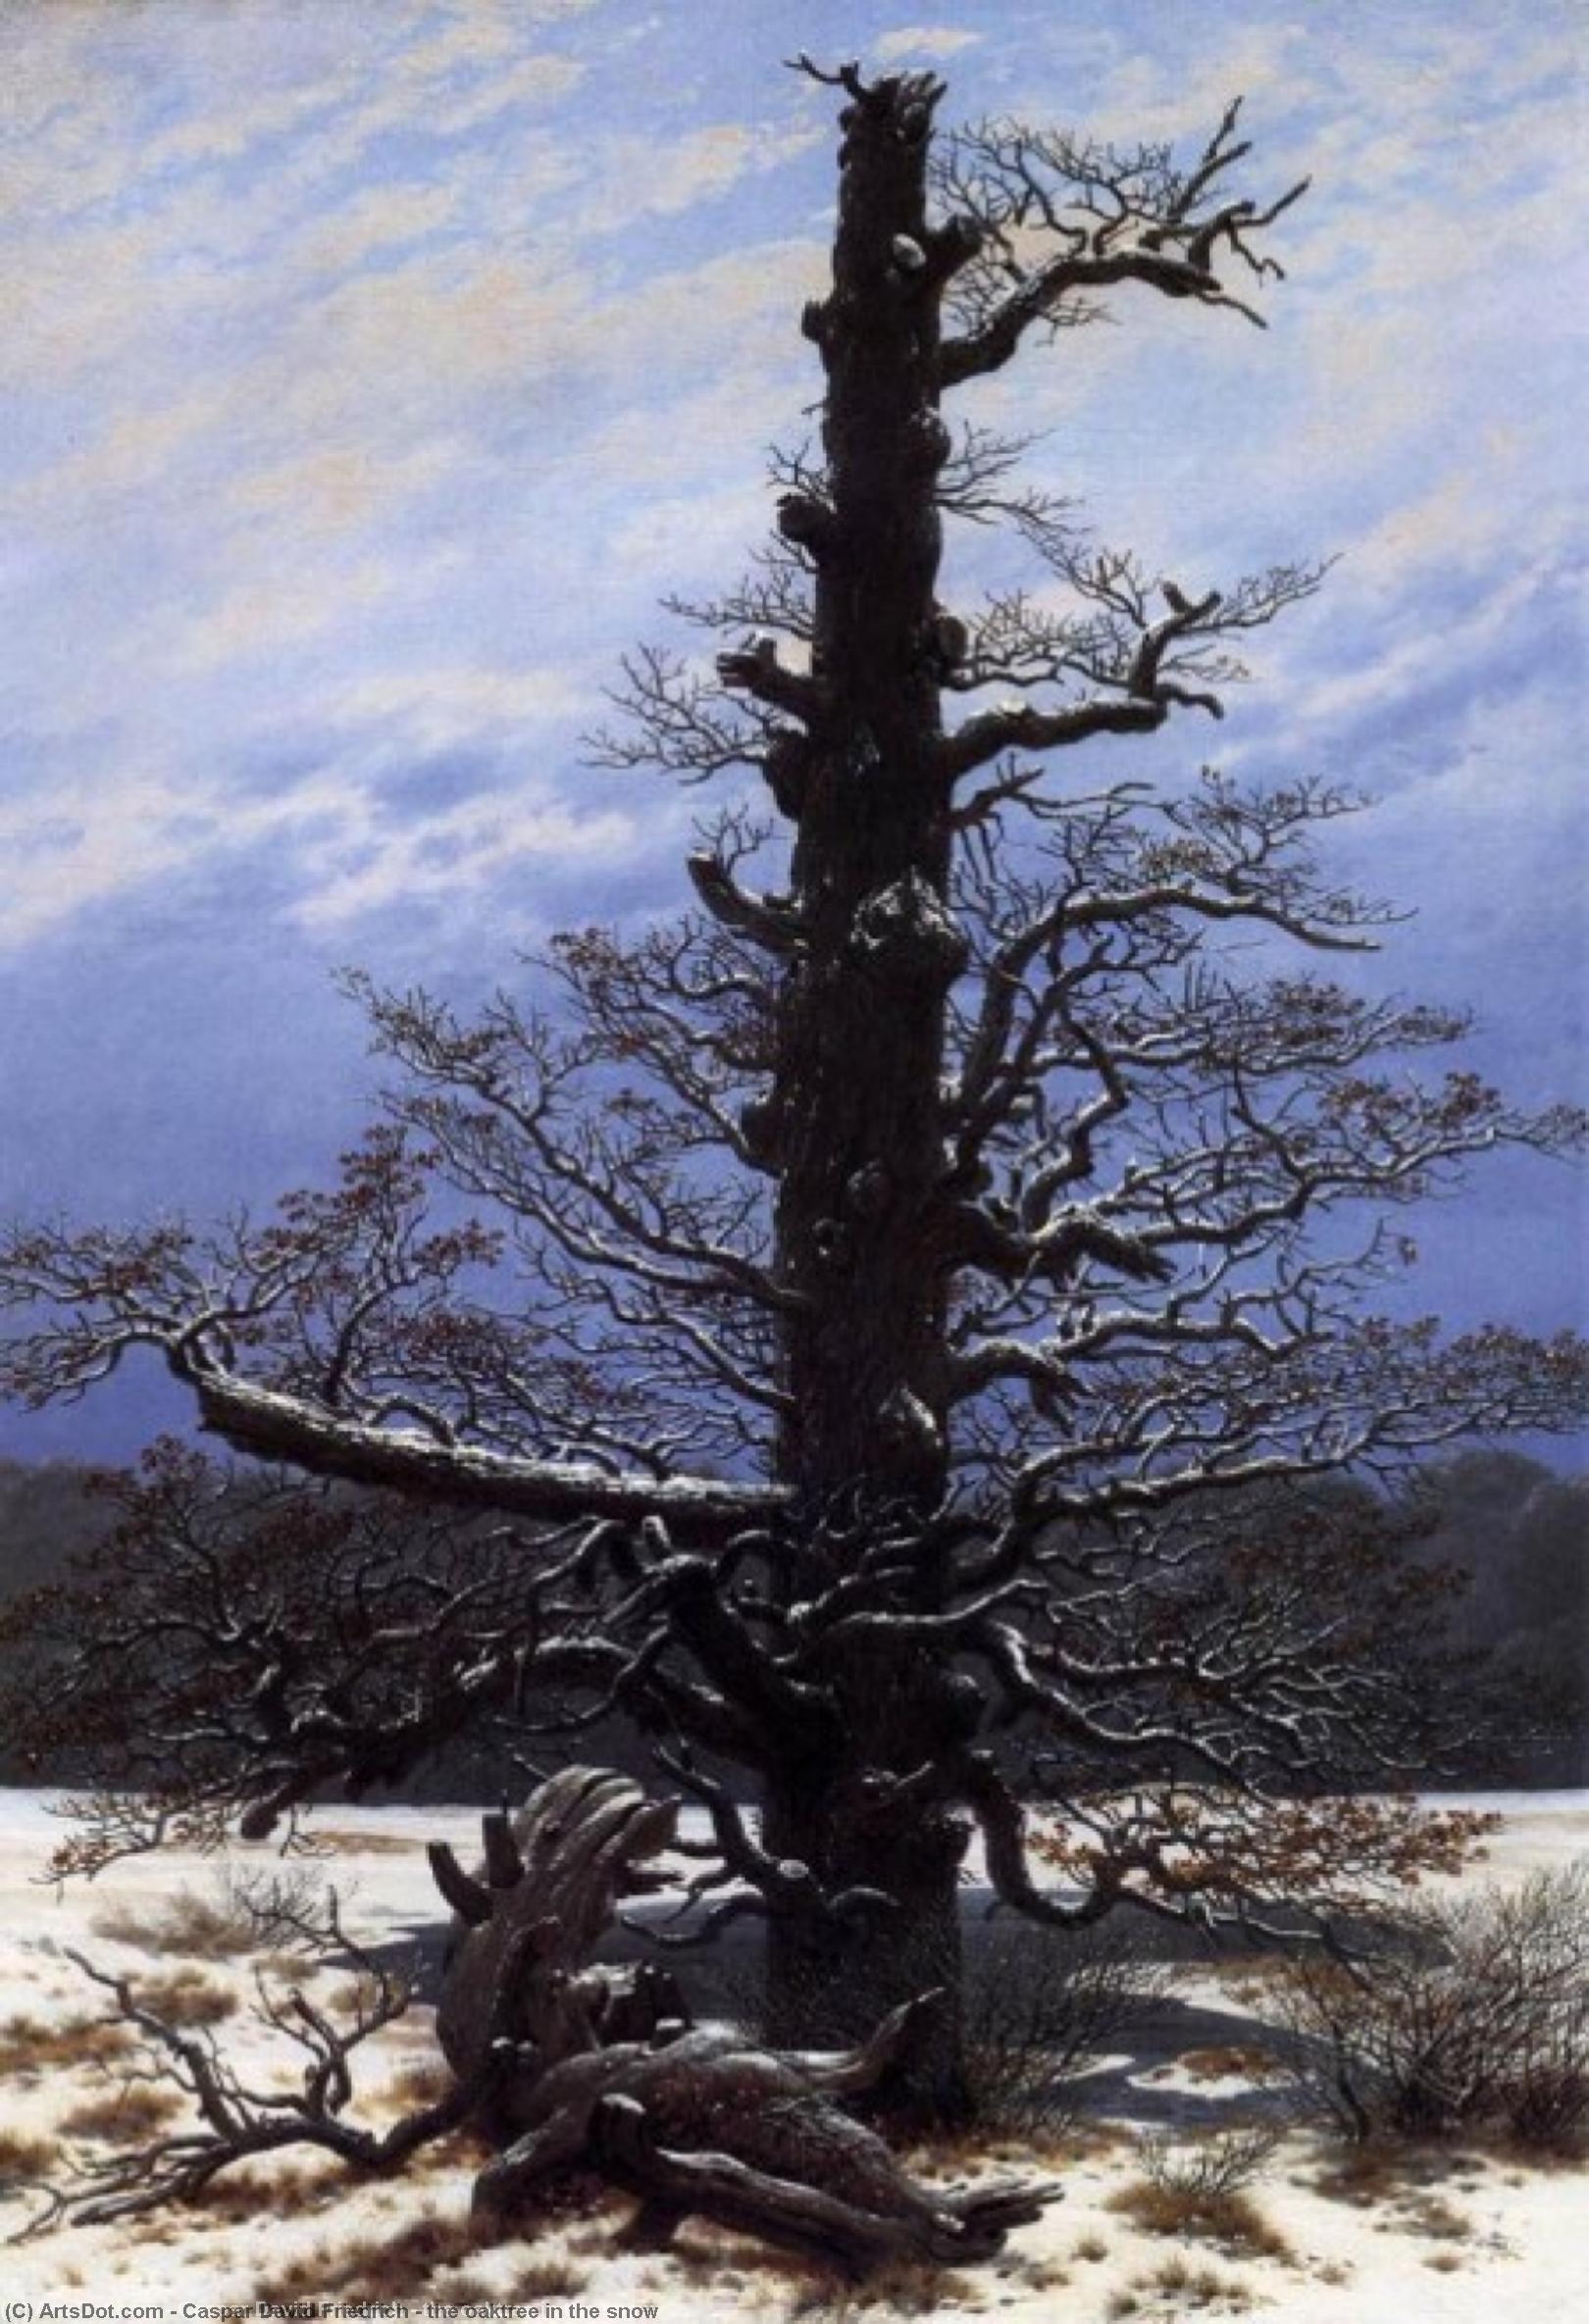 WikiOO.org - Encyclopedia of Fine Arts - Malba, Artwork Caspar David Friedrich - the oaktree in the snow